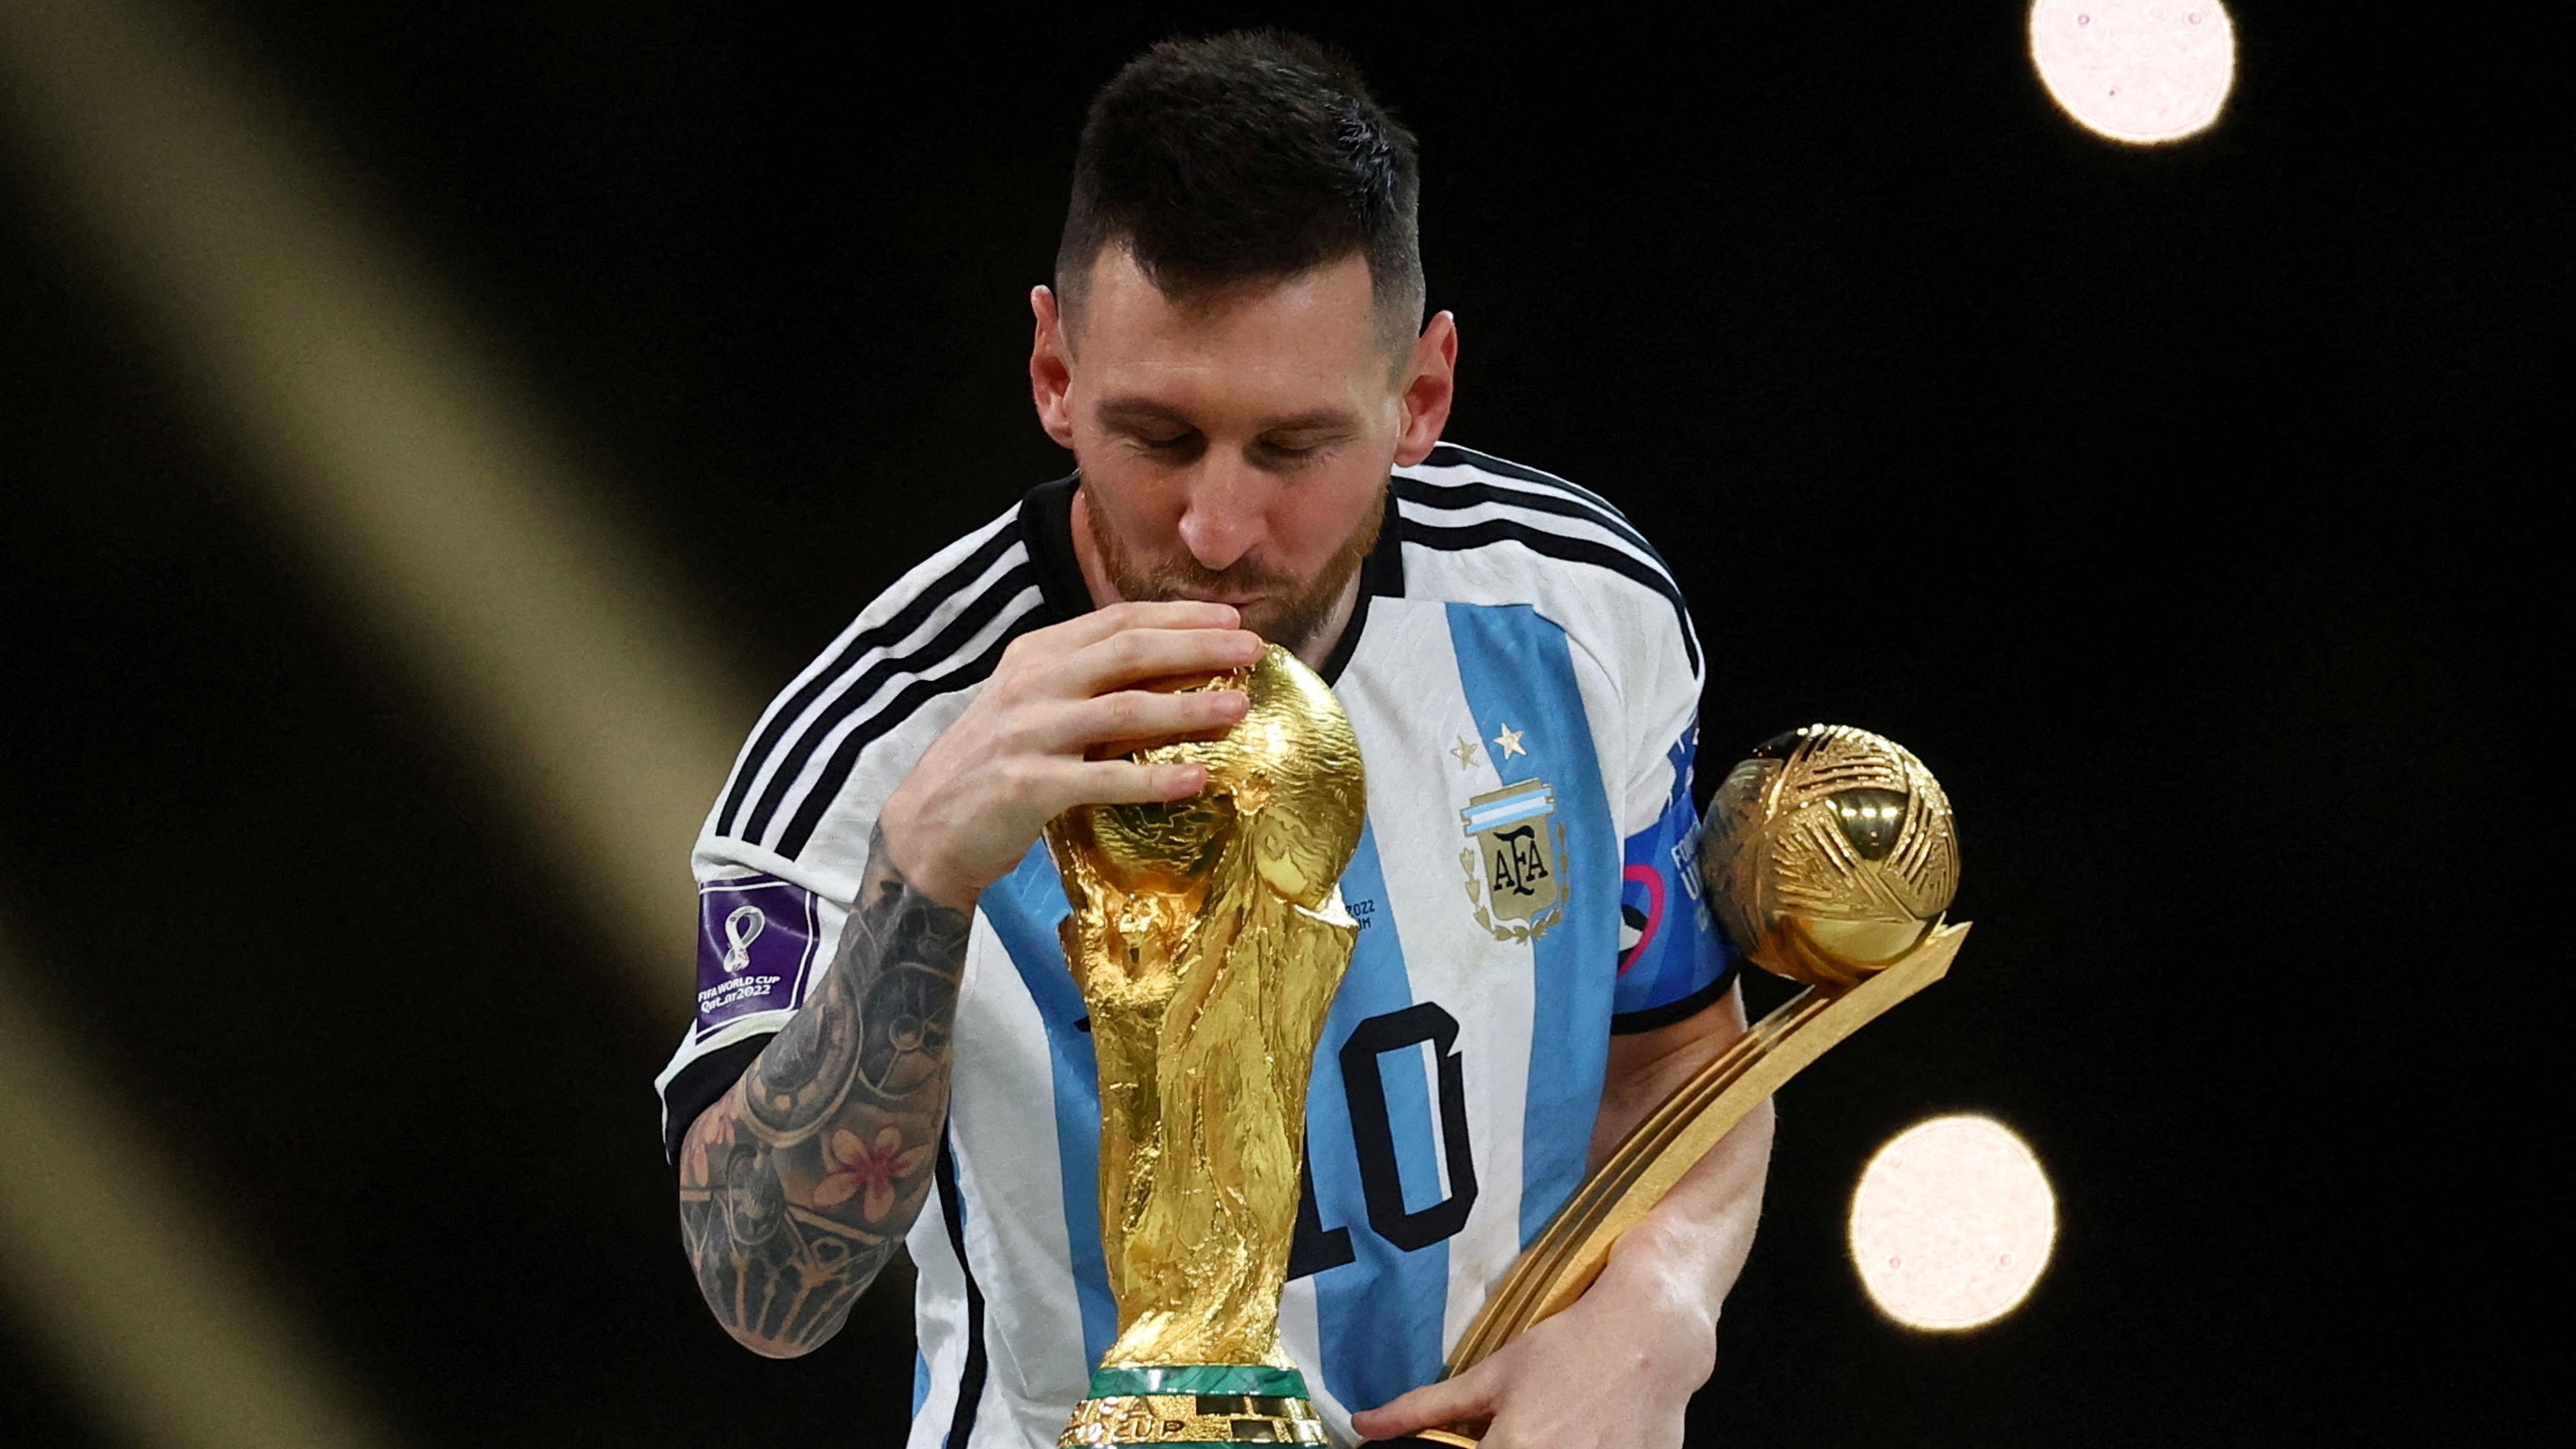 “Me llamaba, la Copa me llamaba”: Lionel Messi explicó el momento en el que besó el trofeo por primera vez